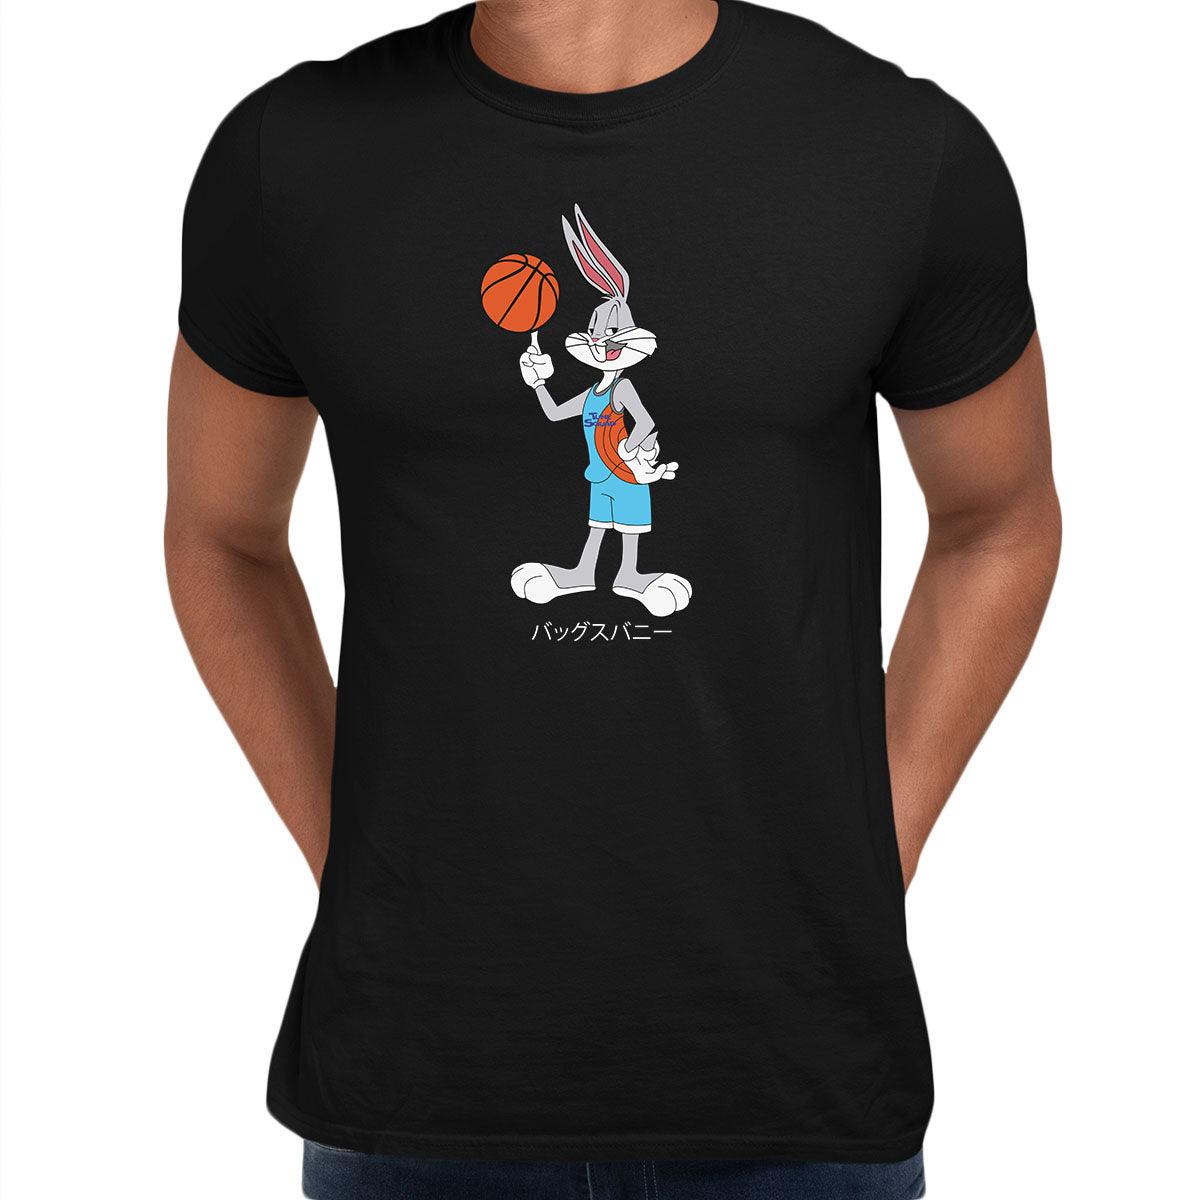 Bugs Bunny Japanese Tune Squad T-shirt Movie - Kuzi Tees